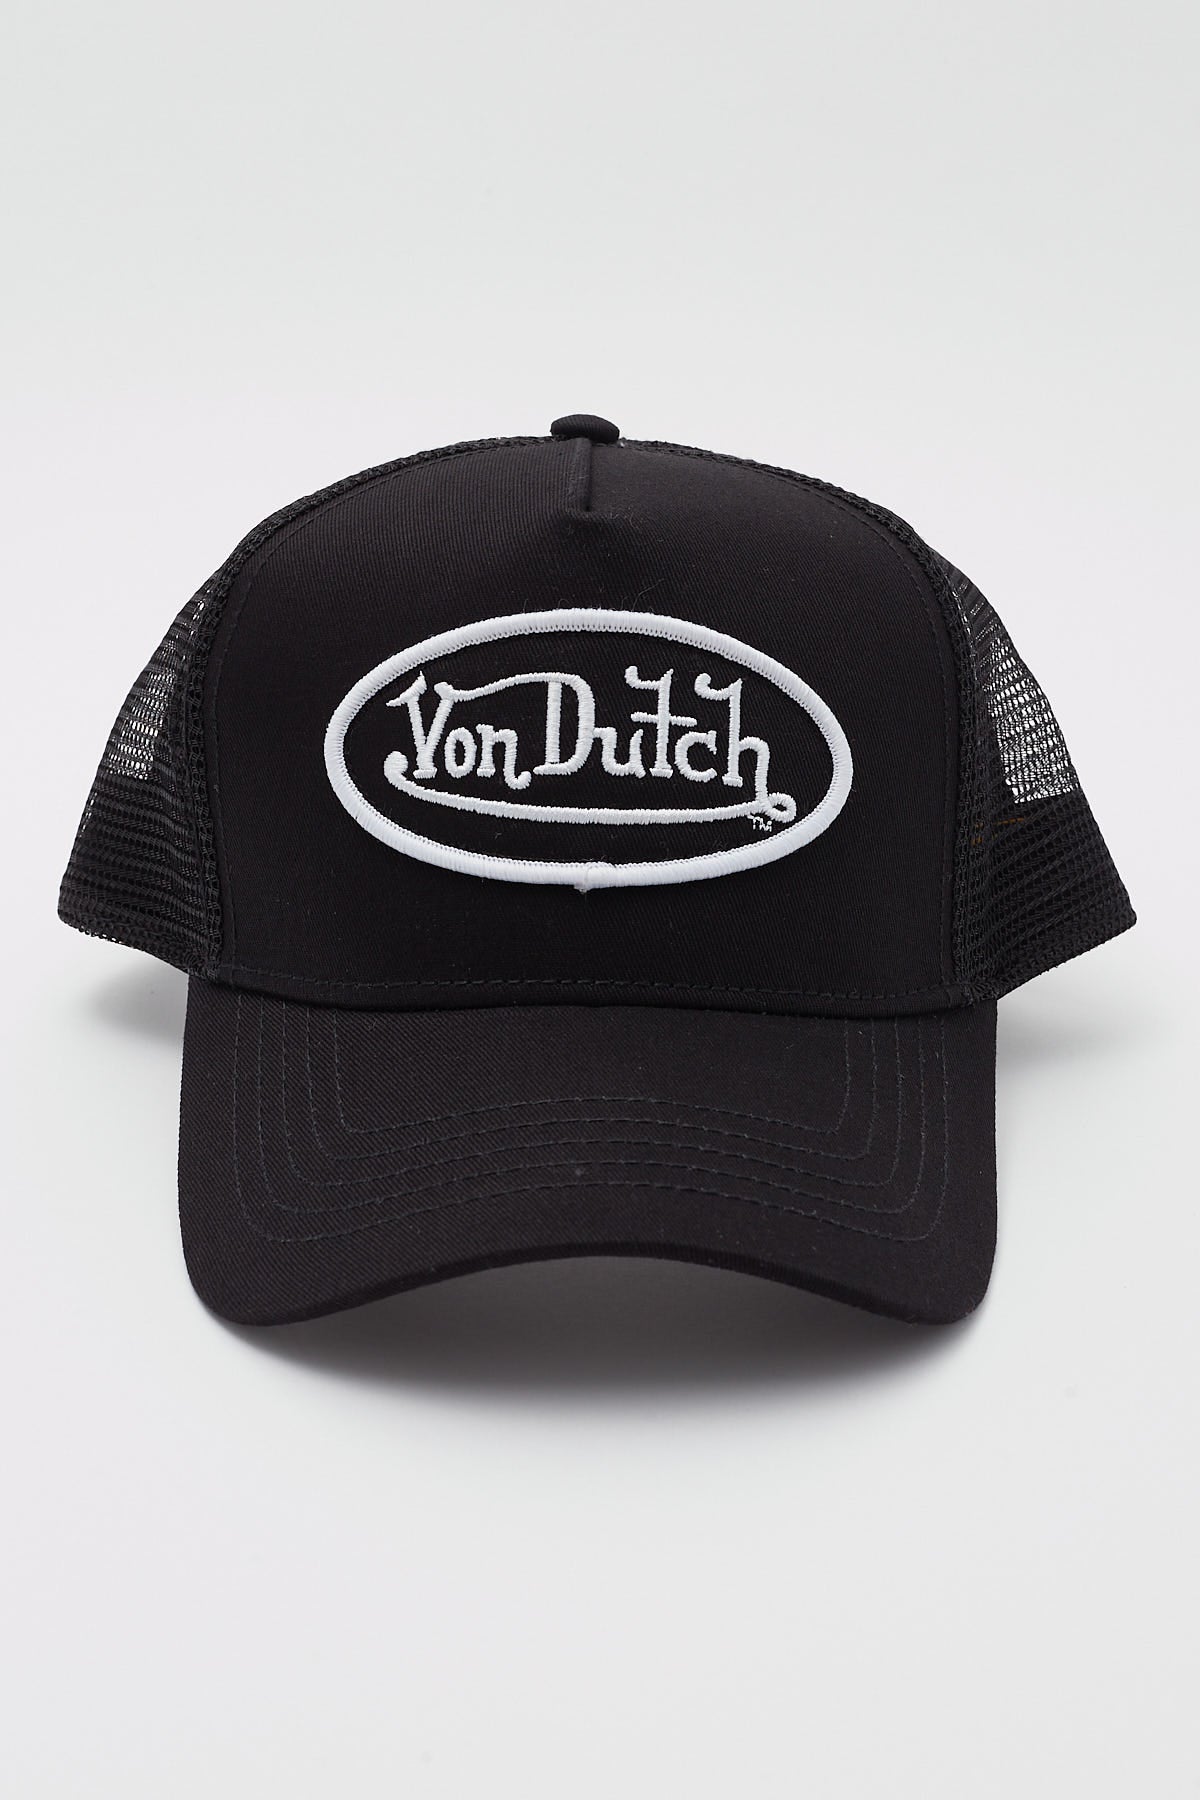 Von Dutch Classic Trucker 51 Black/White